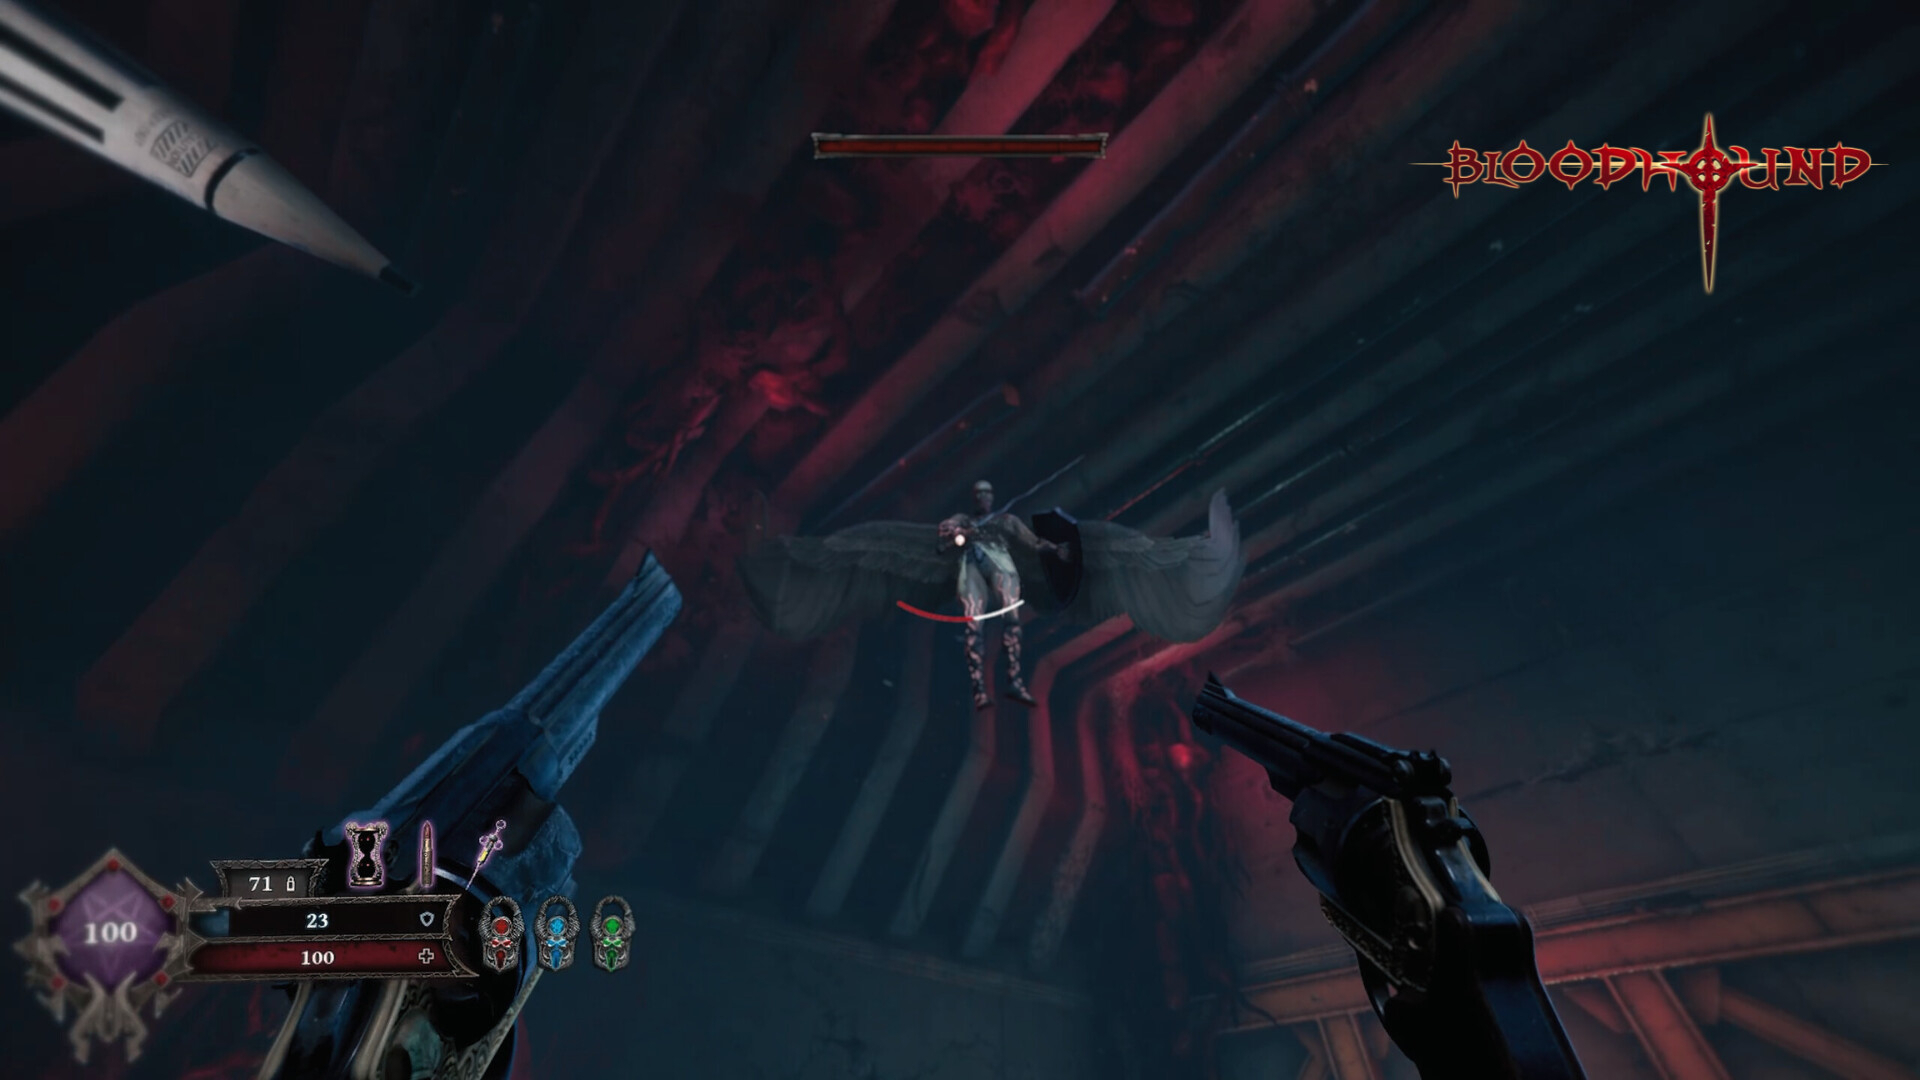 Скриншот из игры Bloodhound под номером 1